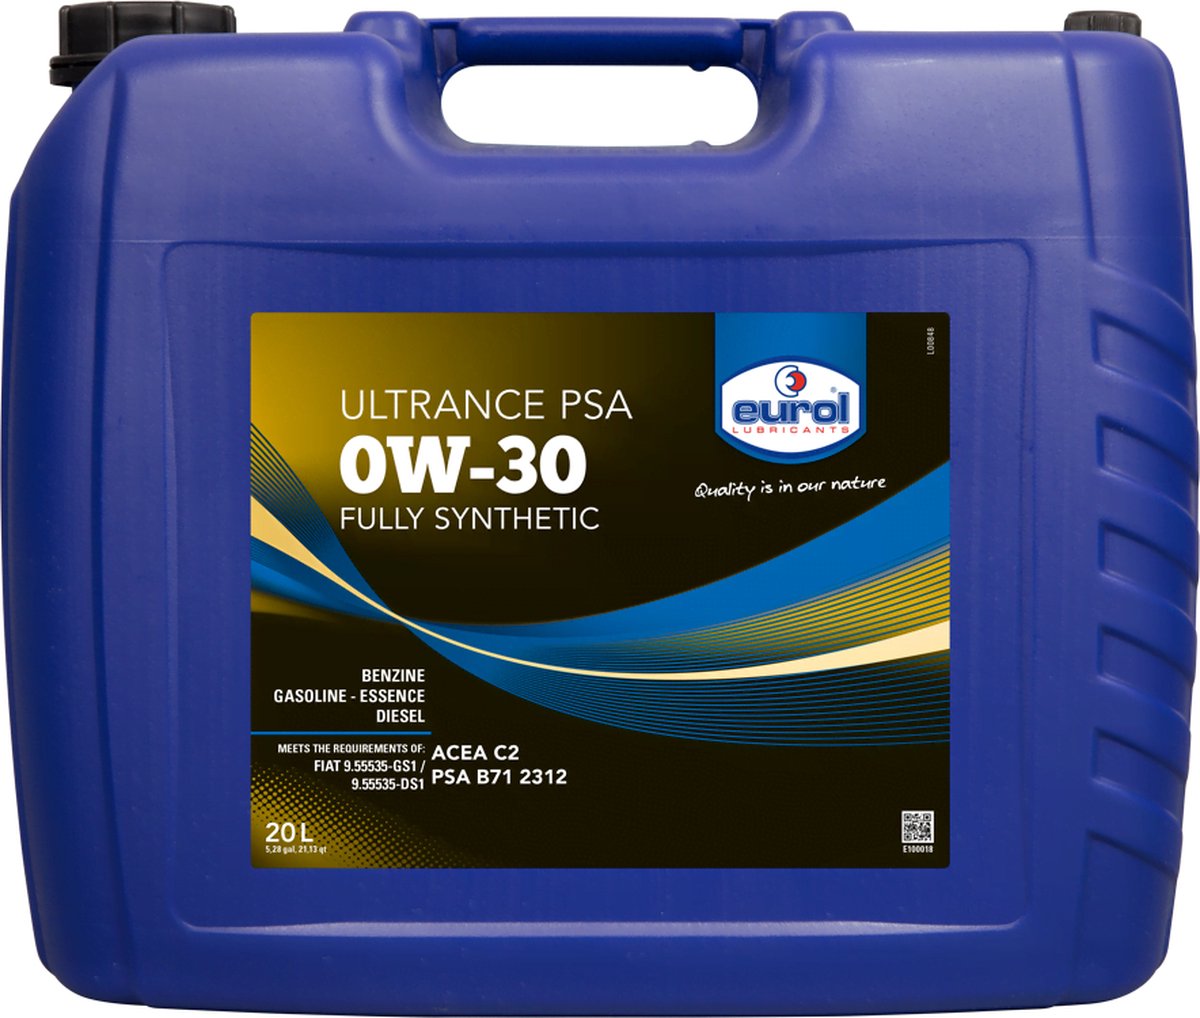 Eurol Ultrance PSA 0W-30 - 20L